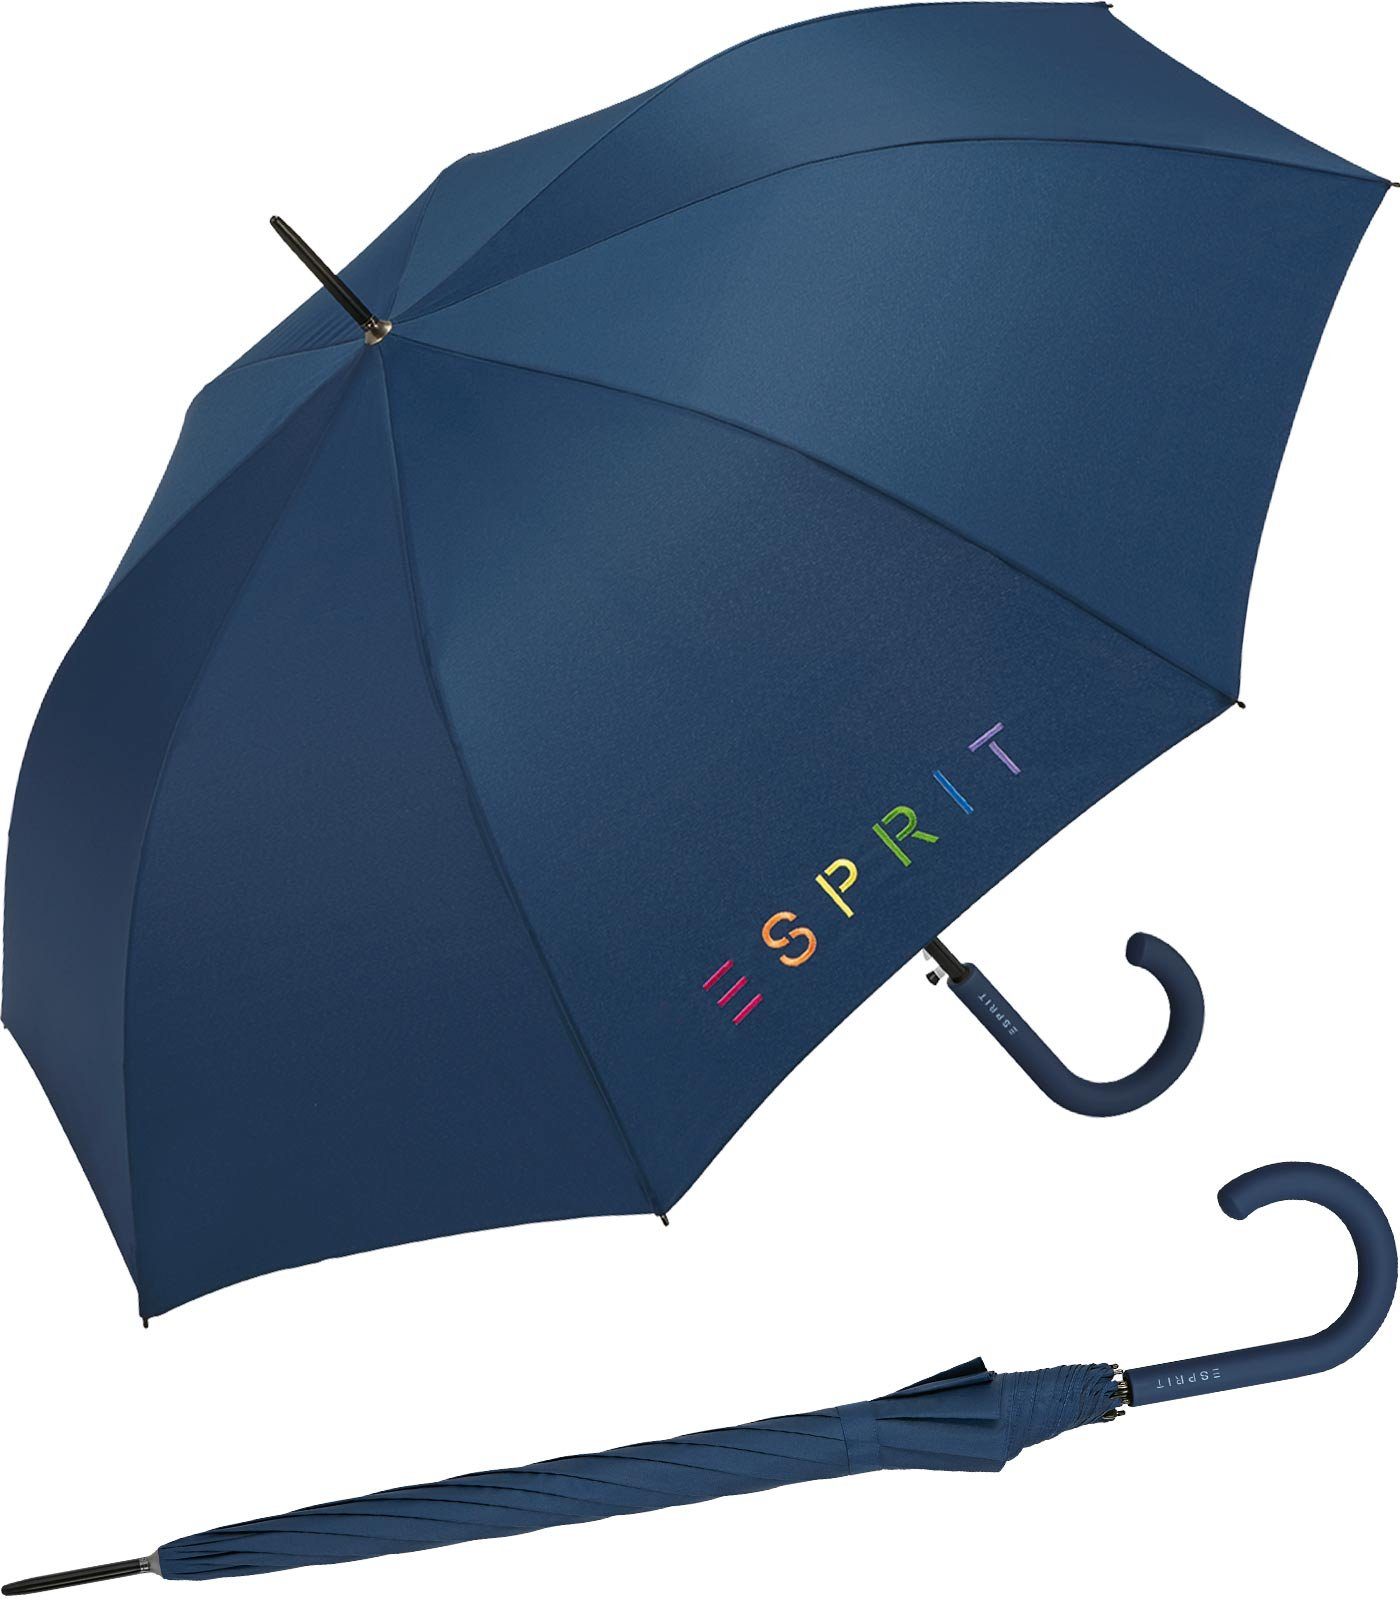 Esprit Langregenschirm Damen-Regenschirm Colorful Logo, bunt bedruckt mit Esprit-Schriftzug